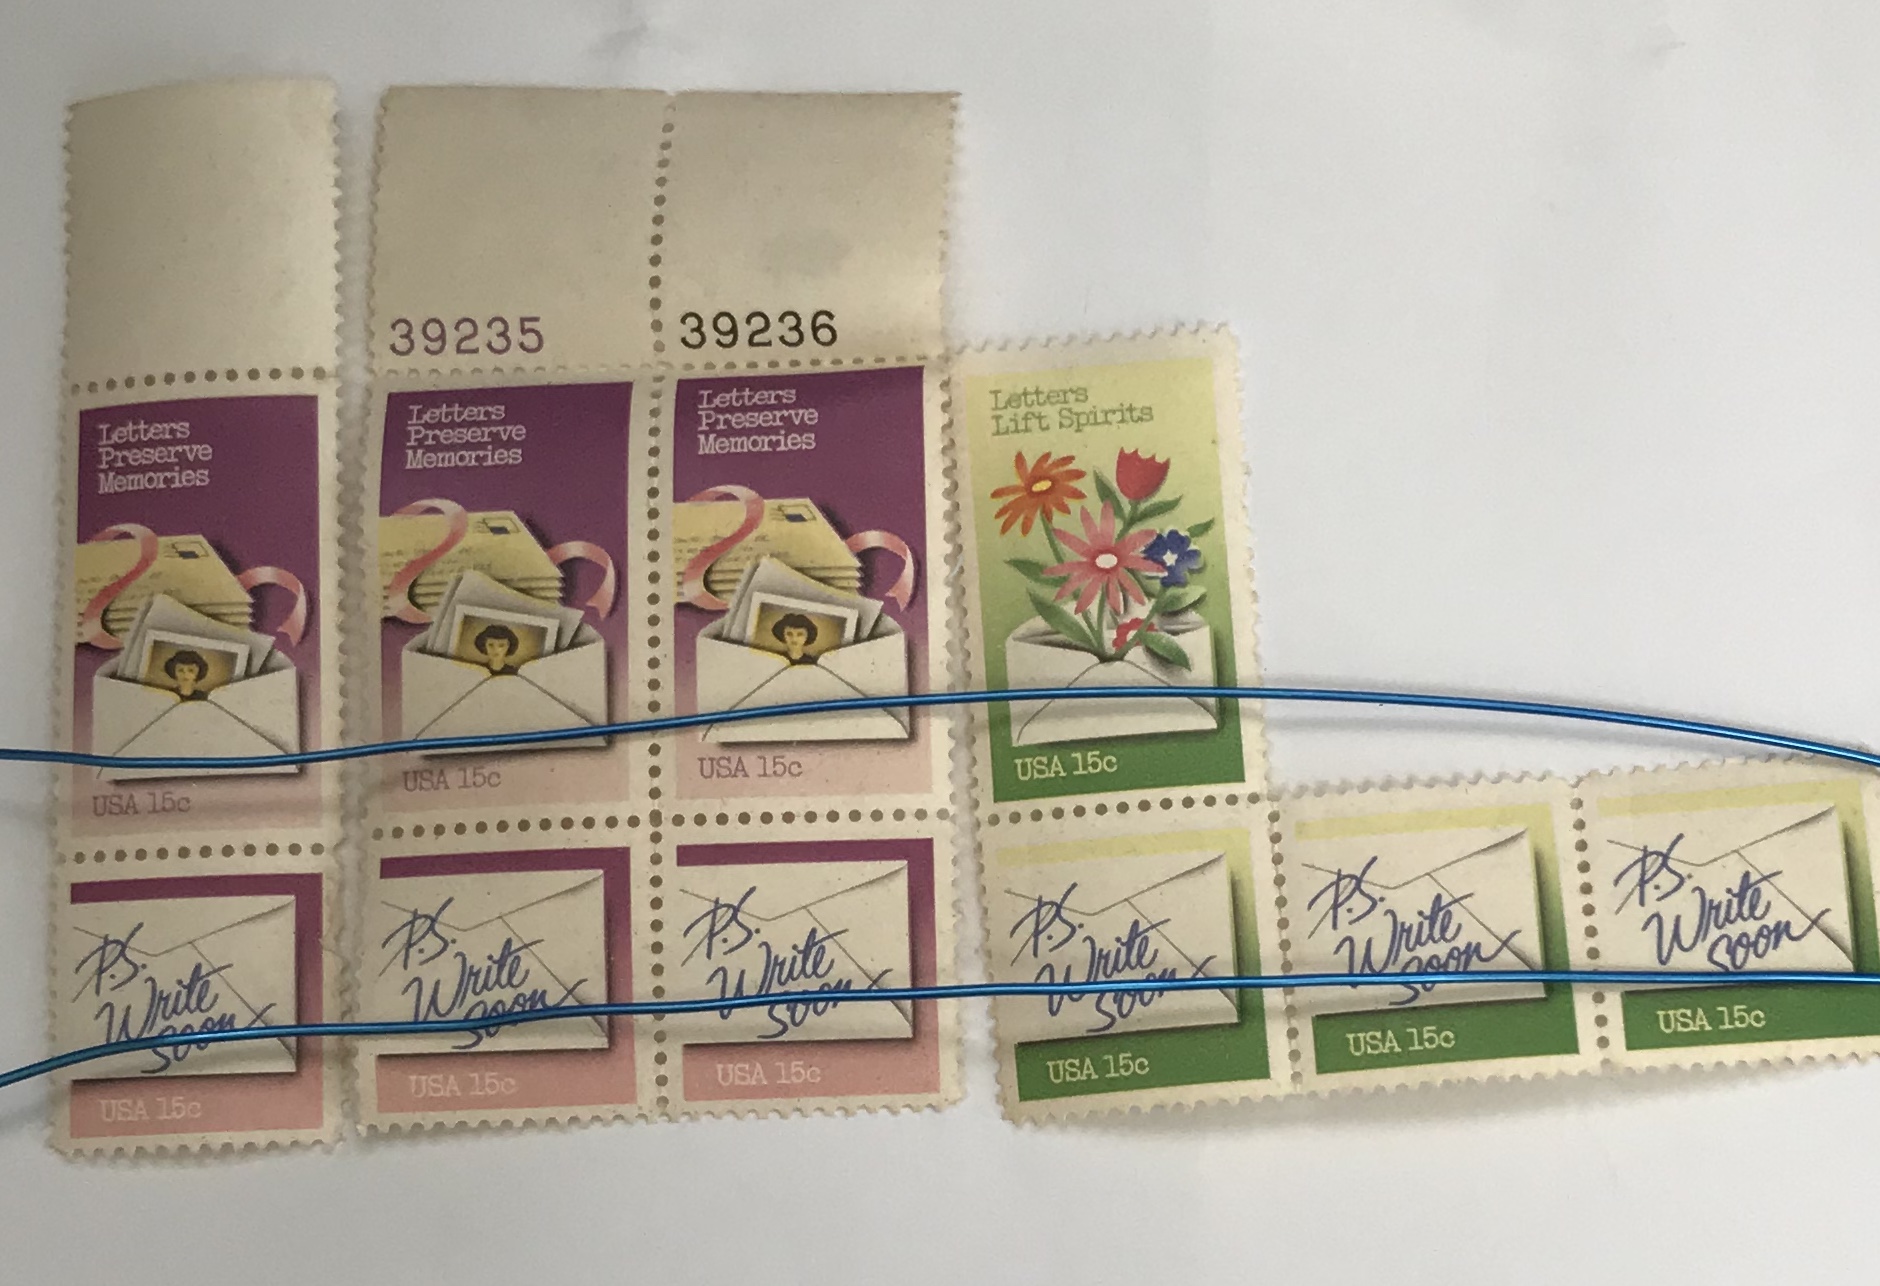 ベトナムの切手・源氏物語切手・ アメリカのヴィンテージ切手 stamps of Vietnam, Genji Monogatari